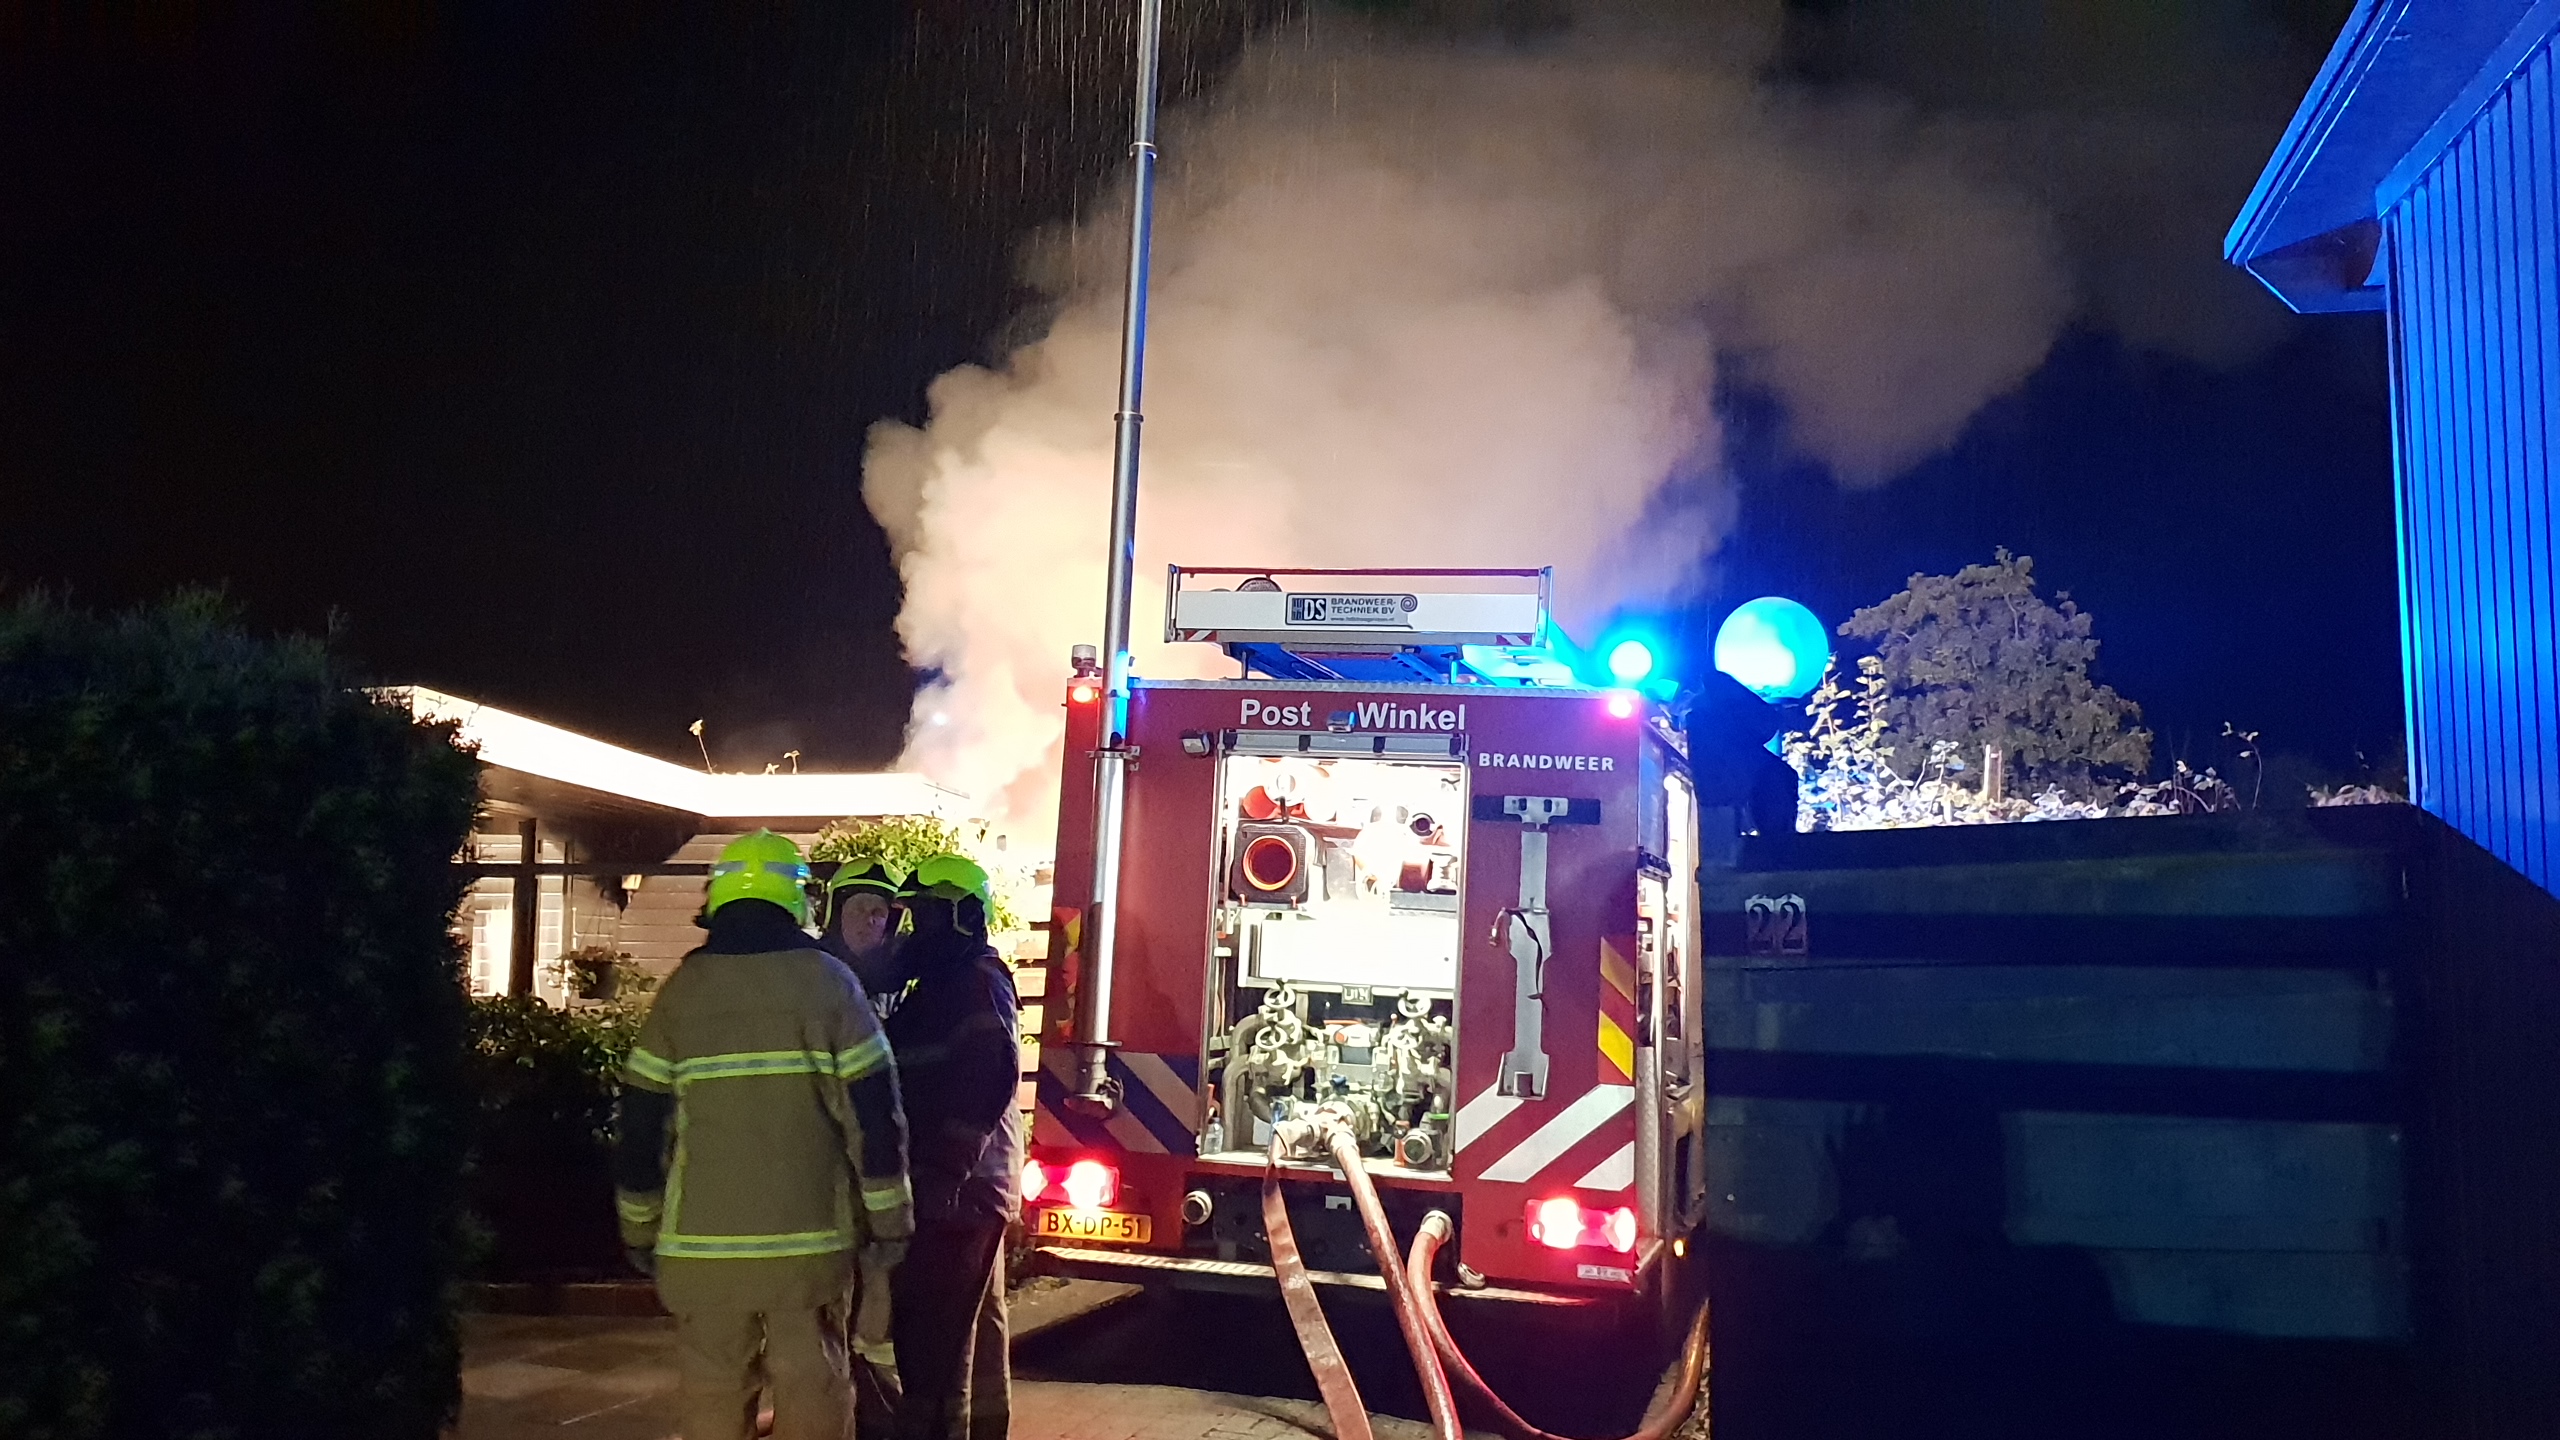 Brand in vakantiewoning in Winkel in de as, bewoonster gewond naar ziekenhuis